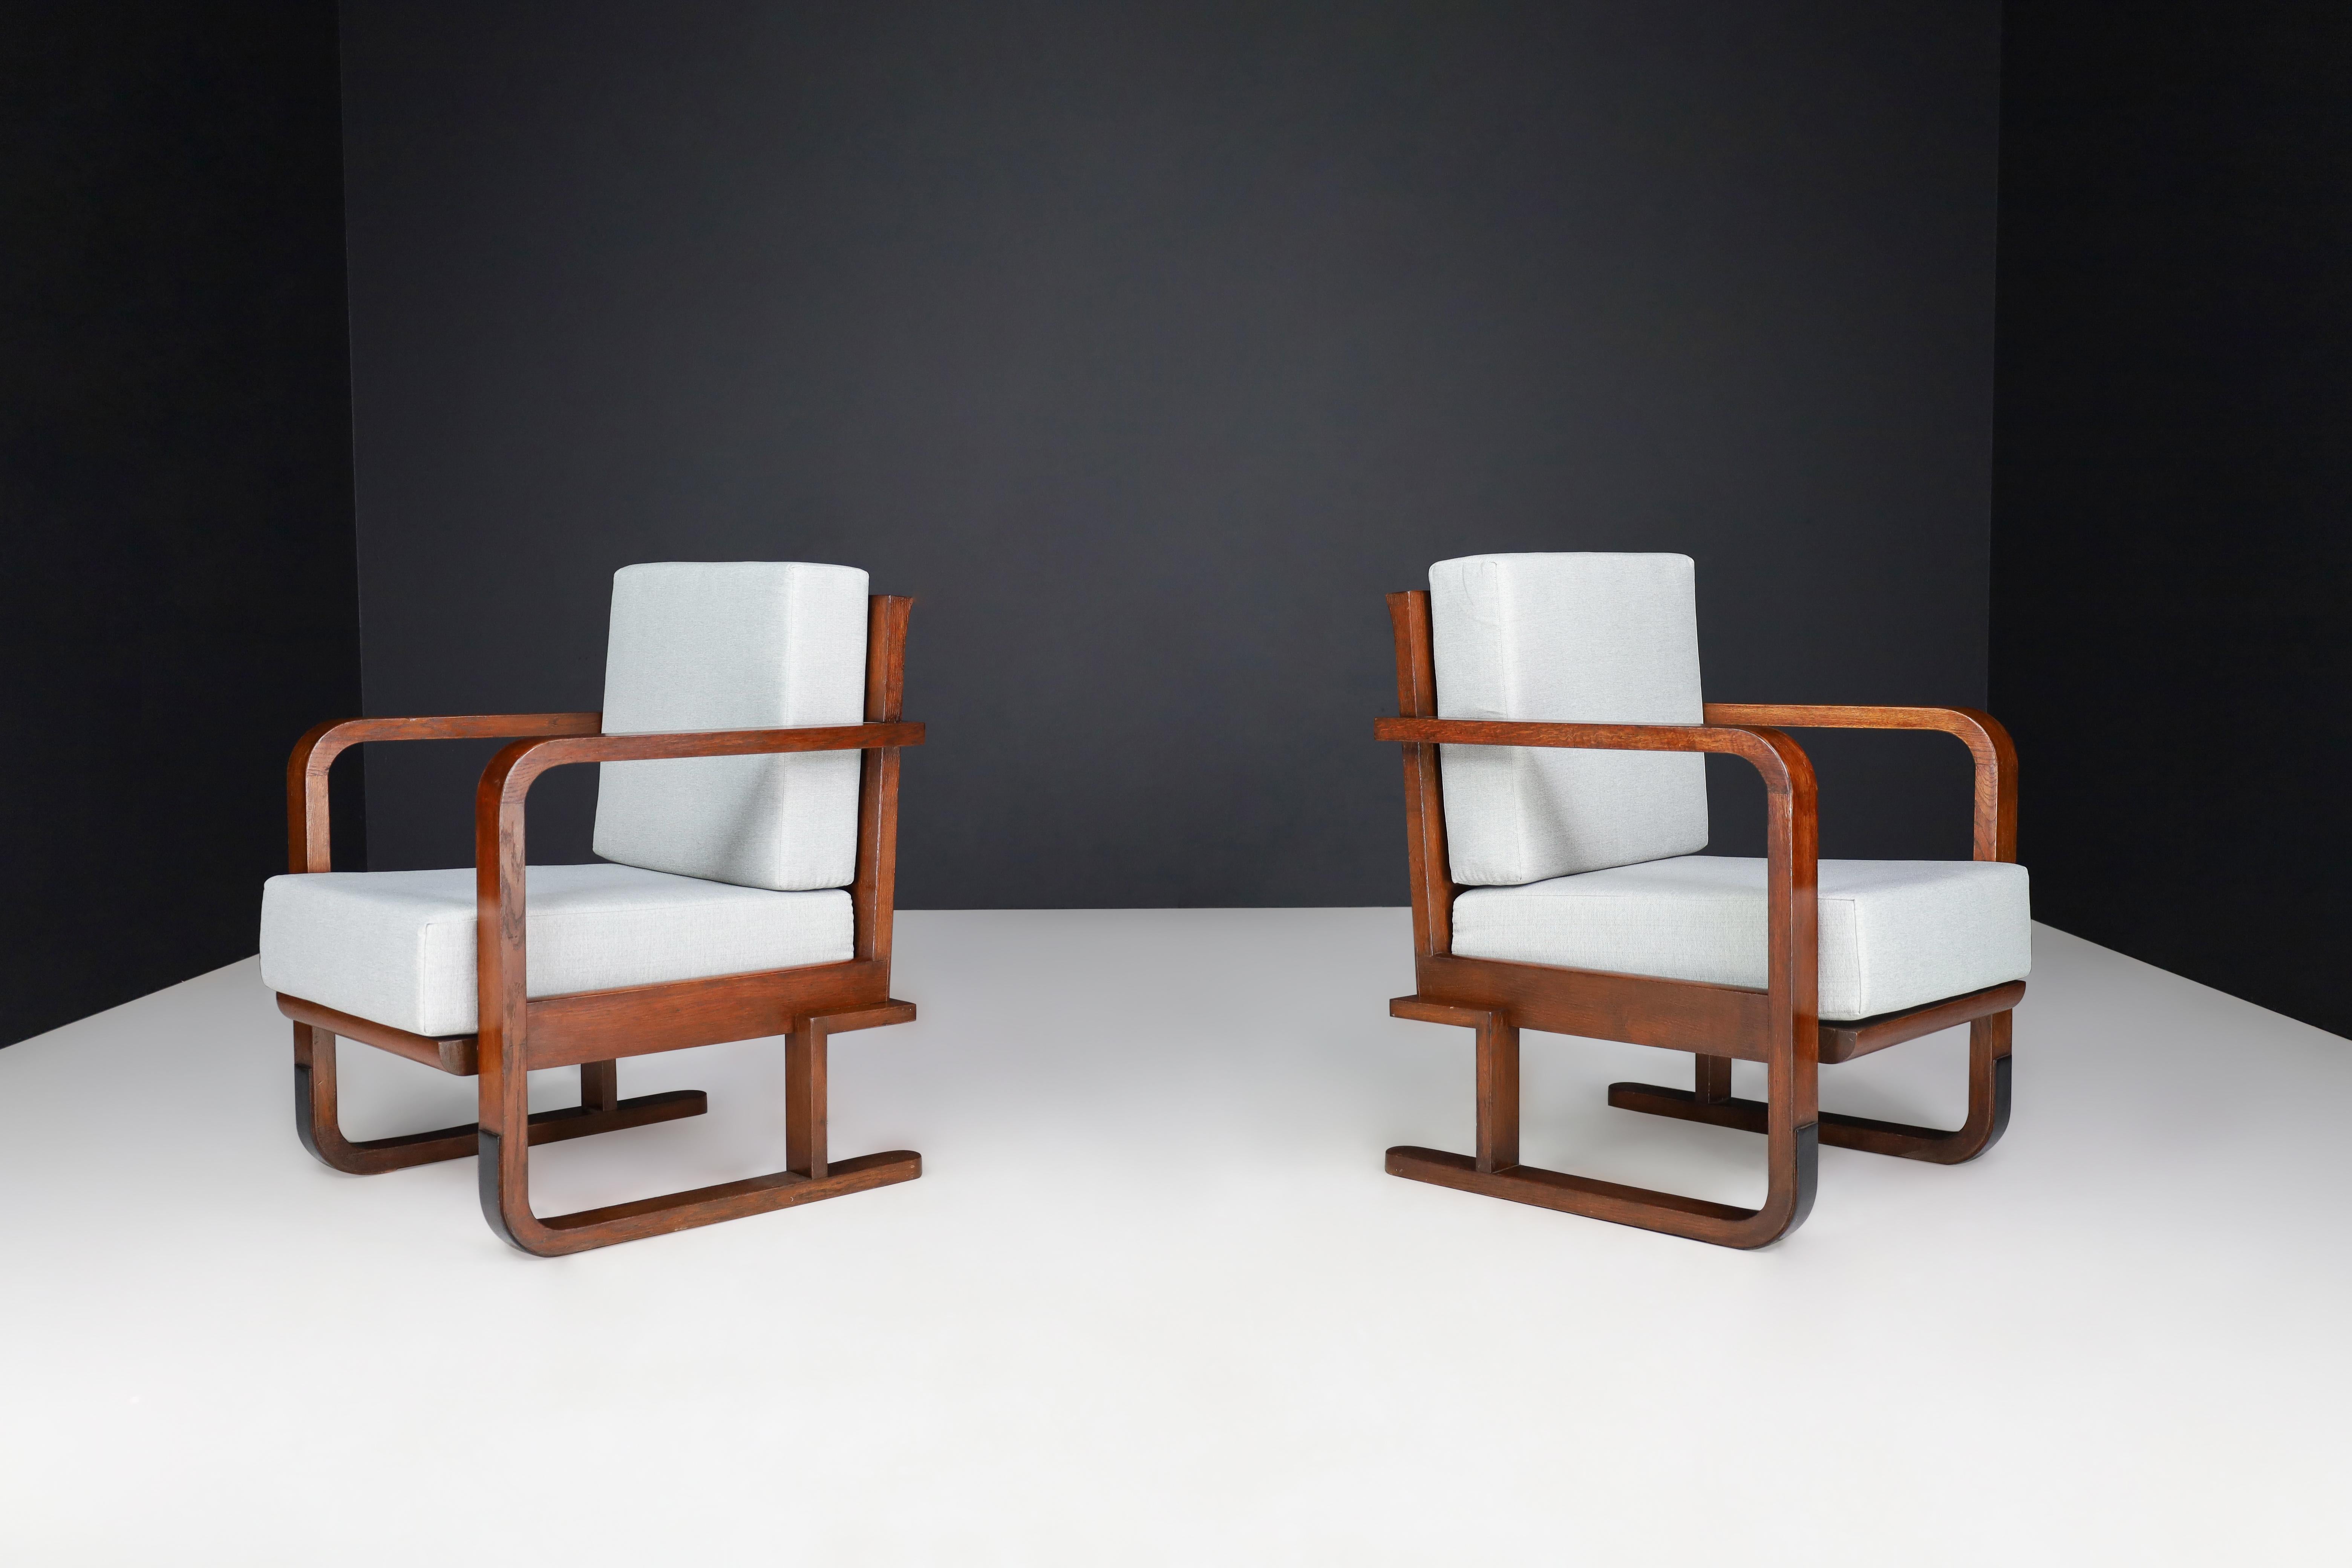 Art déco-Sessel aus Eichenholz- Bugholz und neuer Polsterung, Österreich 1930

Es handelt sich um zwei Art-Déco-Sessel, die in den 1930er Jahren in Österreich hergestellt wurden. Sie sind aus Eichenbugholz gefertigt und mit einem neuen Stoff bezogen